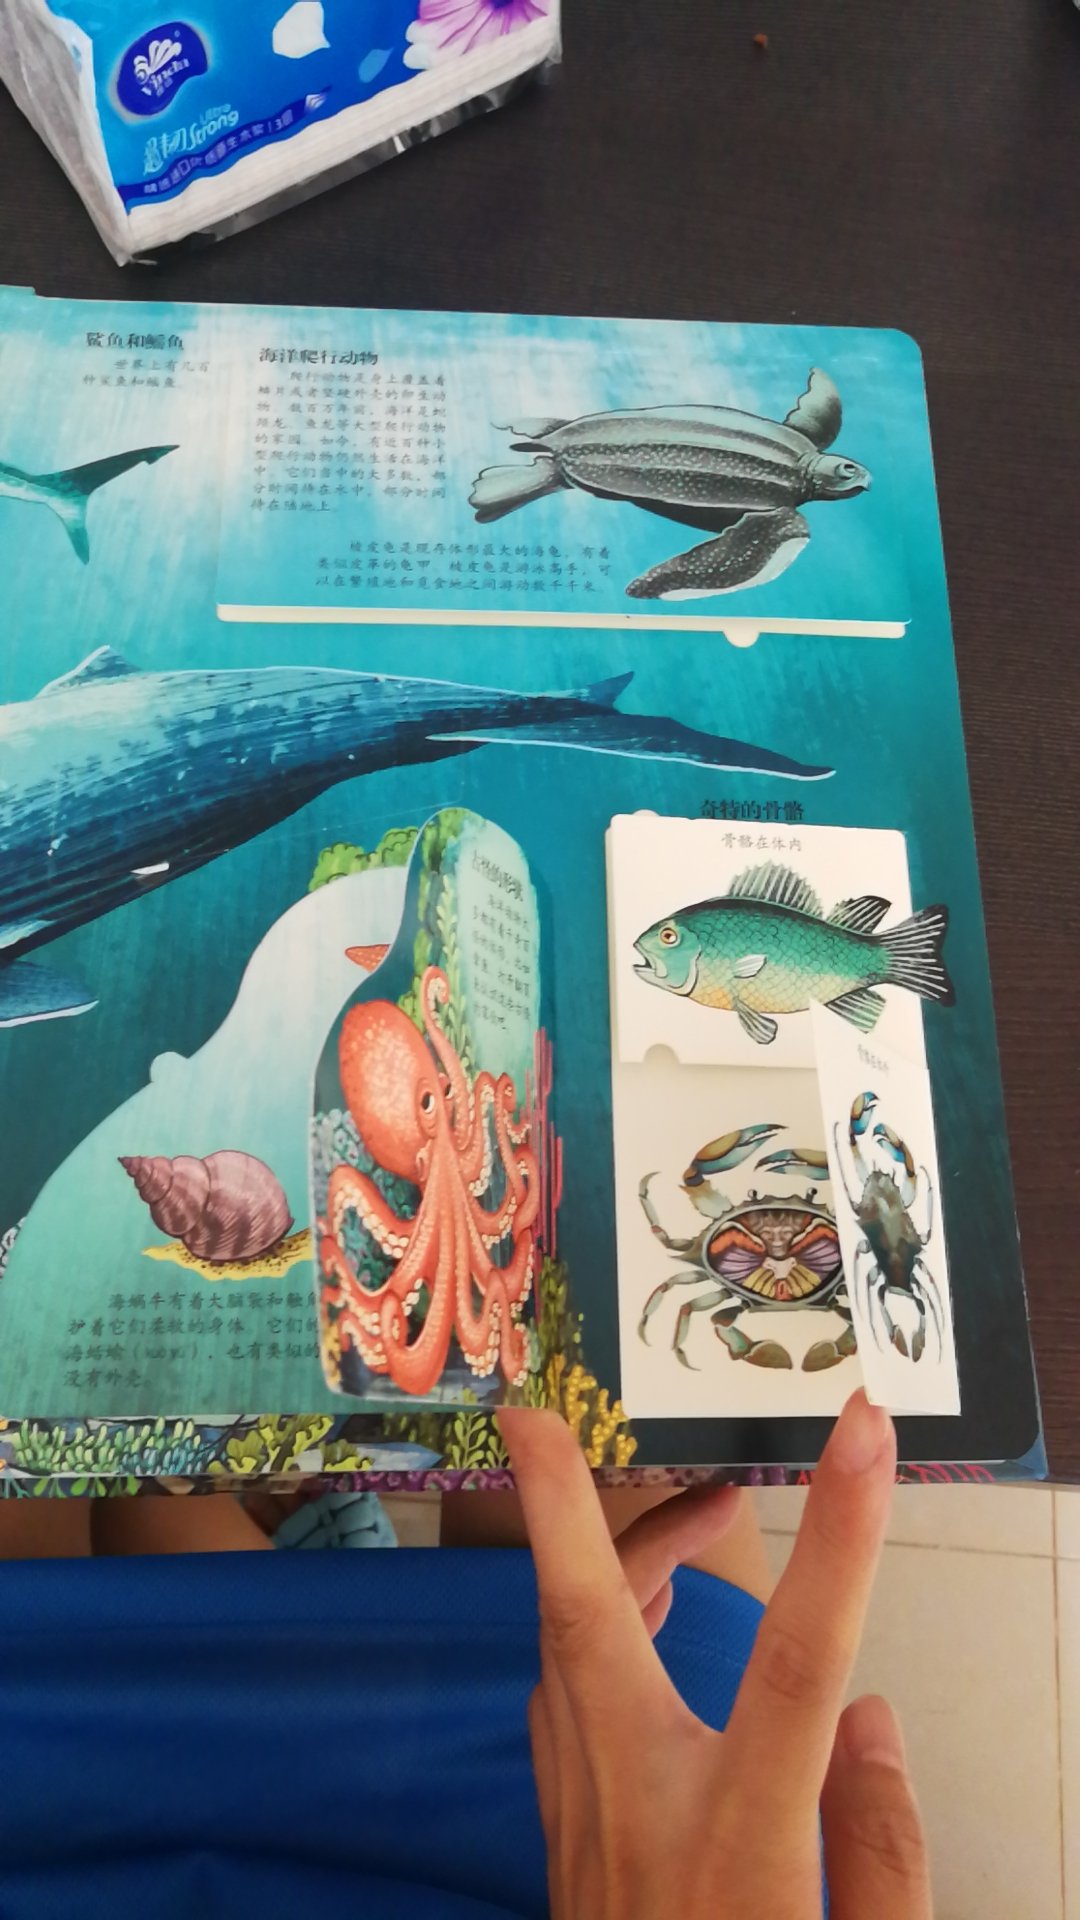 这本书非常好，孩子特别喜欢海洋生物，这里面的图还是立体的，孩子更是爱不释手，拿到了书就翻越个不停，还能学到很多知识，图书质量也是没得说，送货快